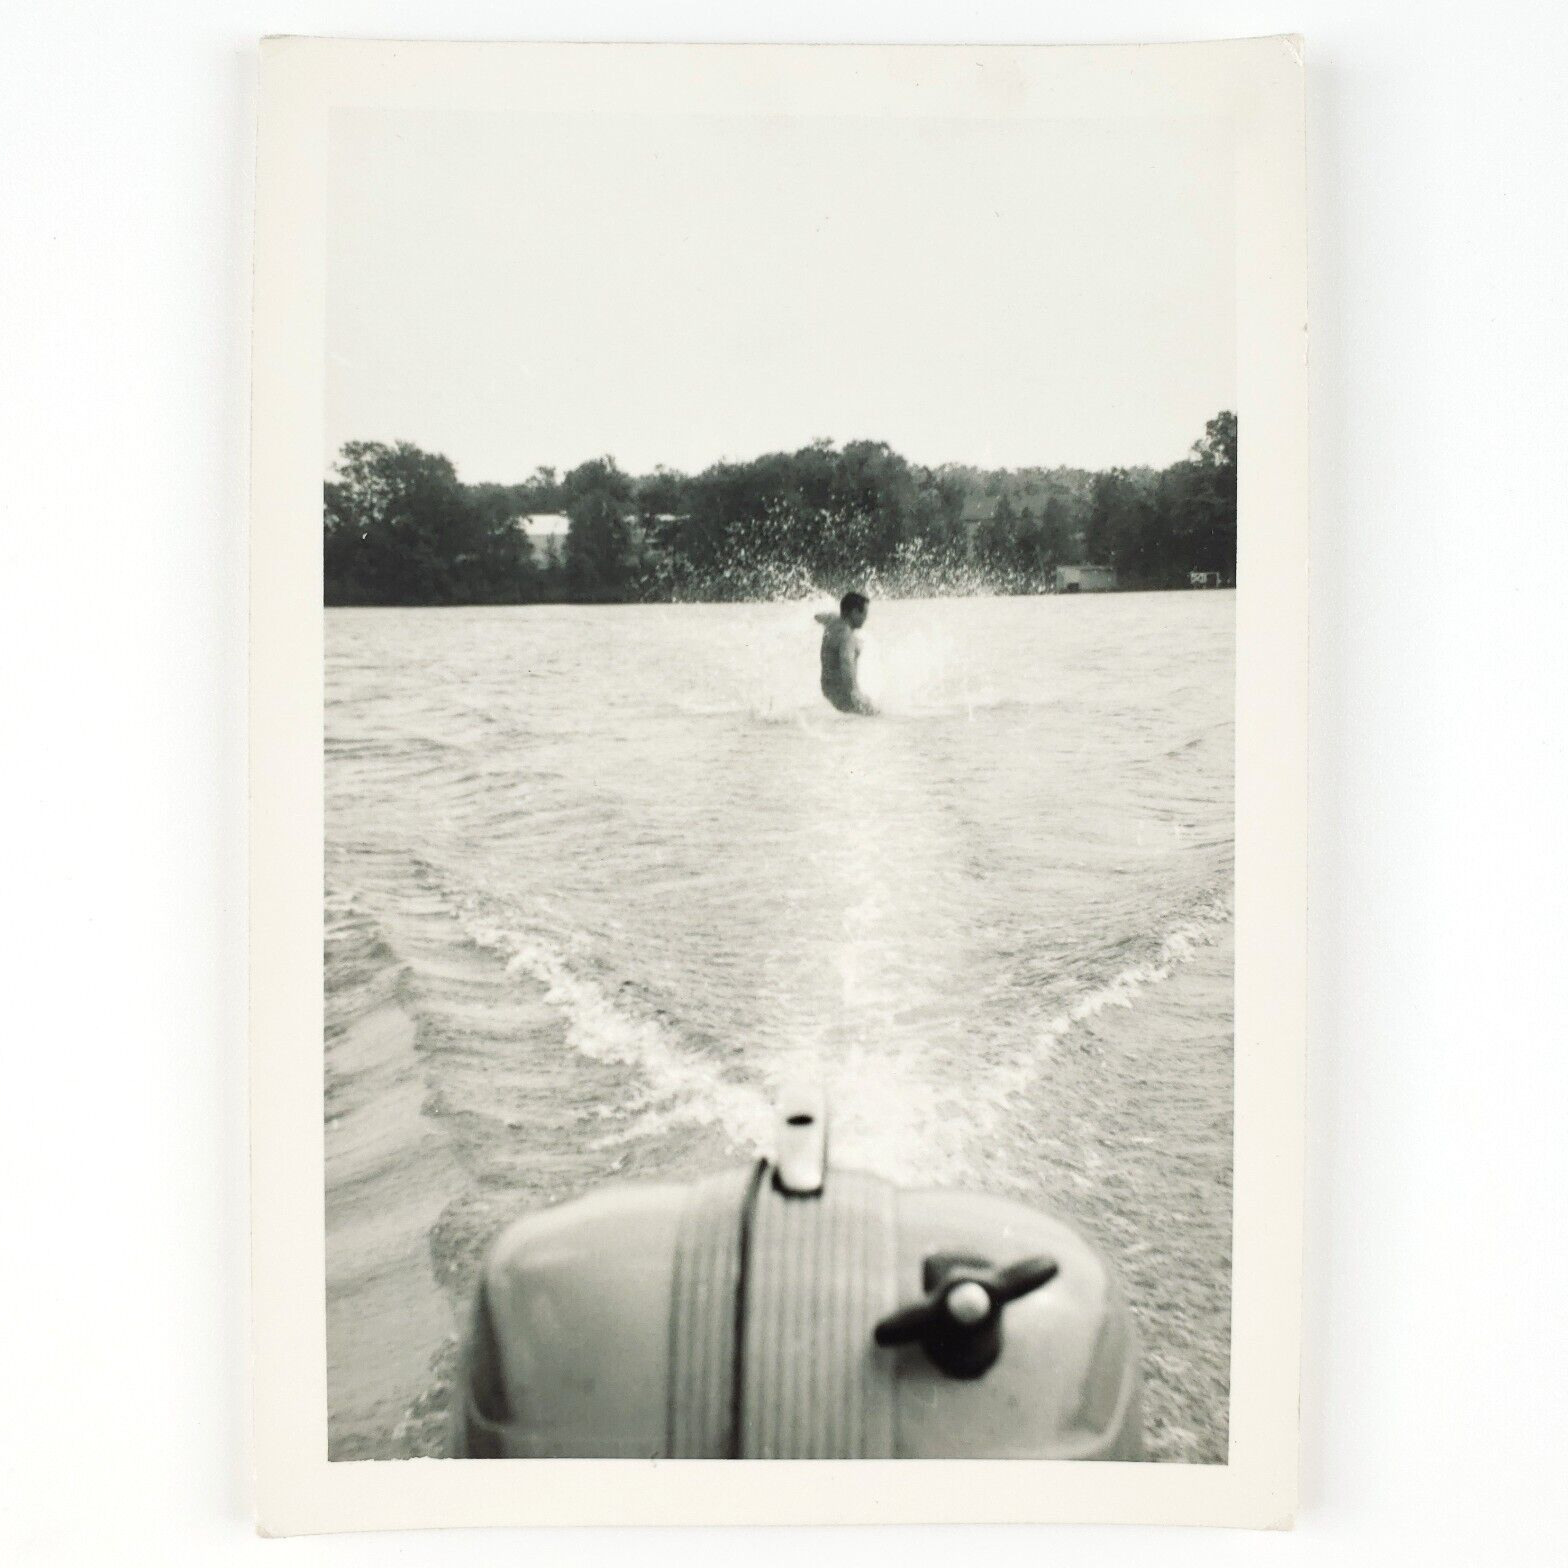 Falling Water Ski Man Photo 1950s Boat Motor Skiing Accident Snapshot Art C1766